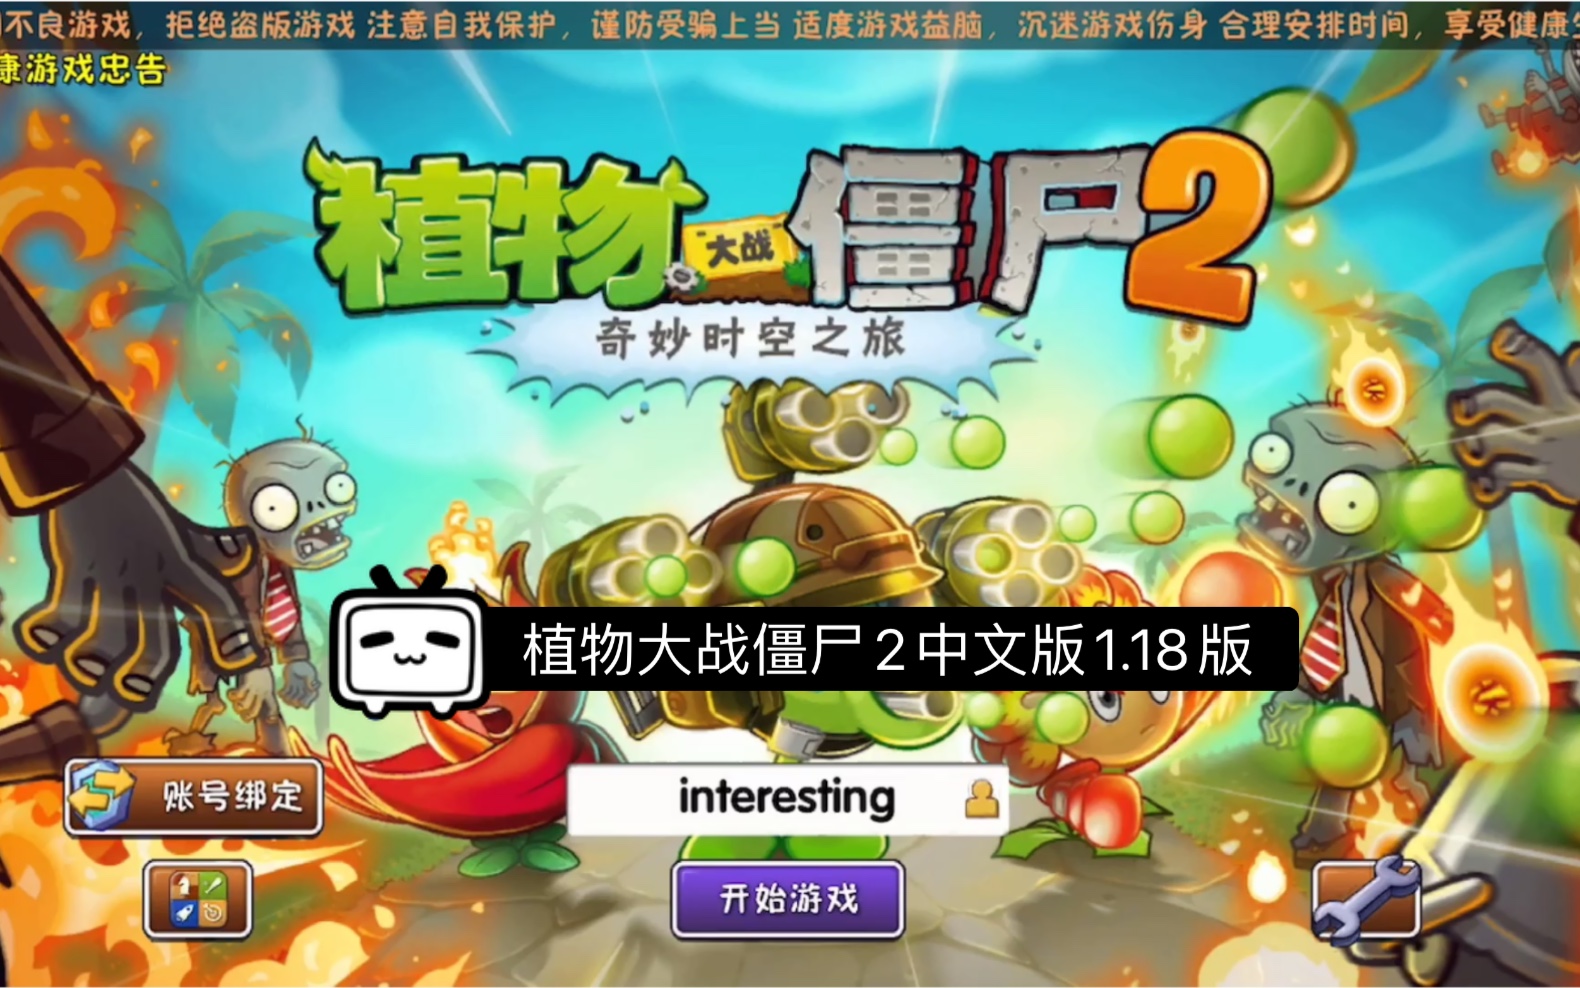 植物大战僵尸2中文版版本介绍1:1.18版本画质精美，不坑钱，能联网玩挑战，是玩旧版本的好选择